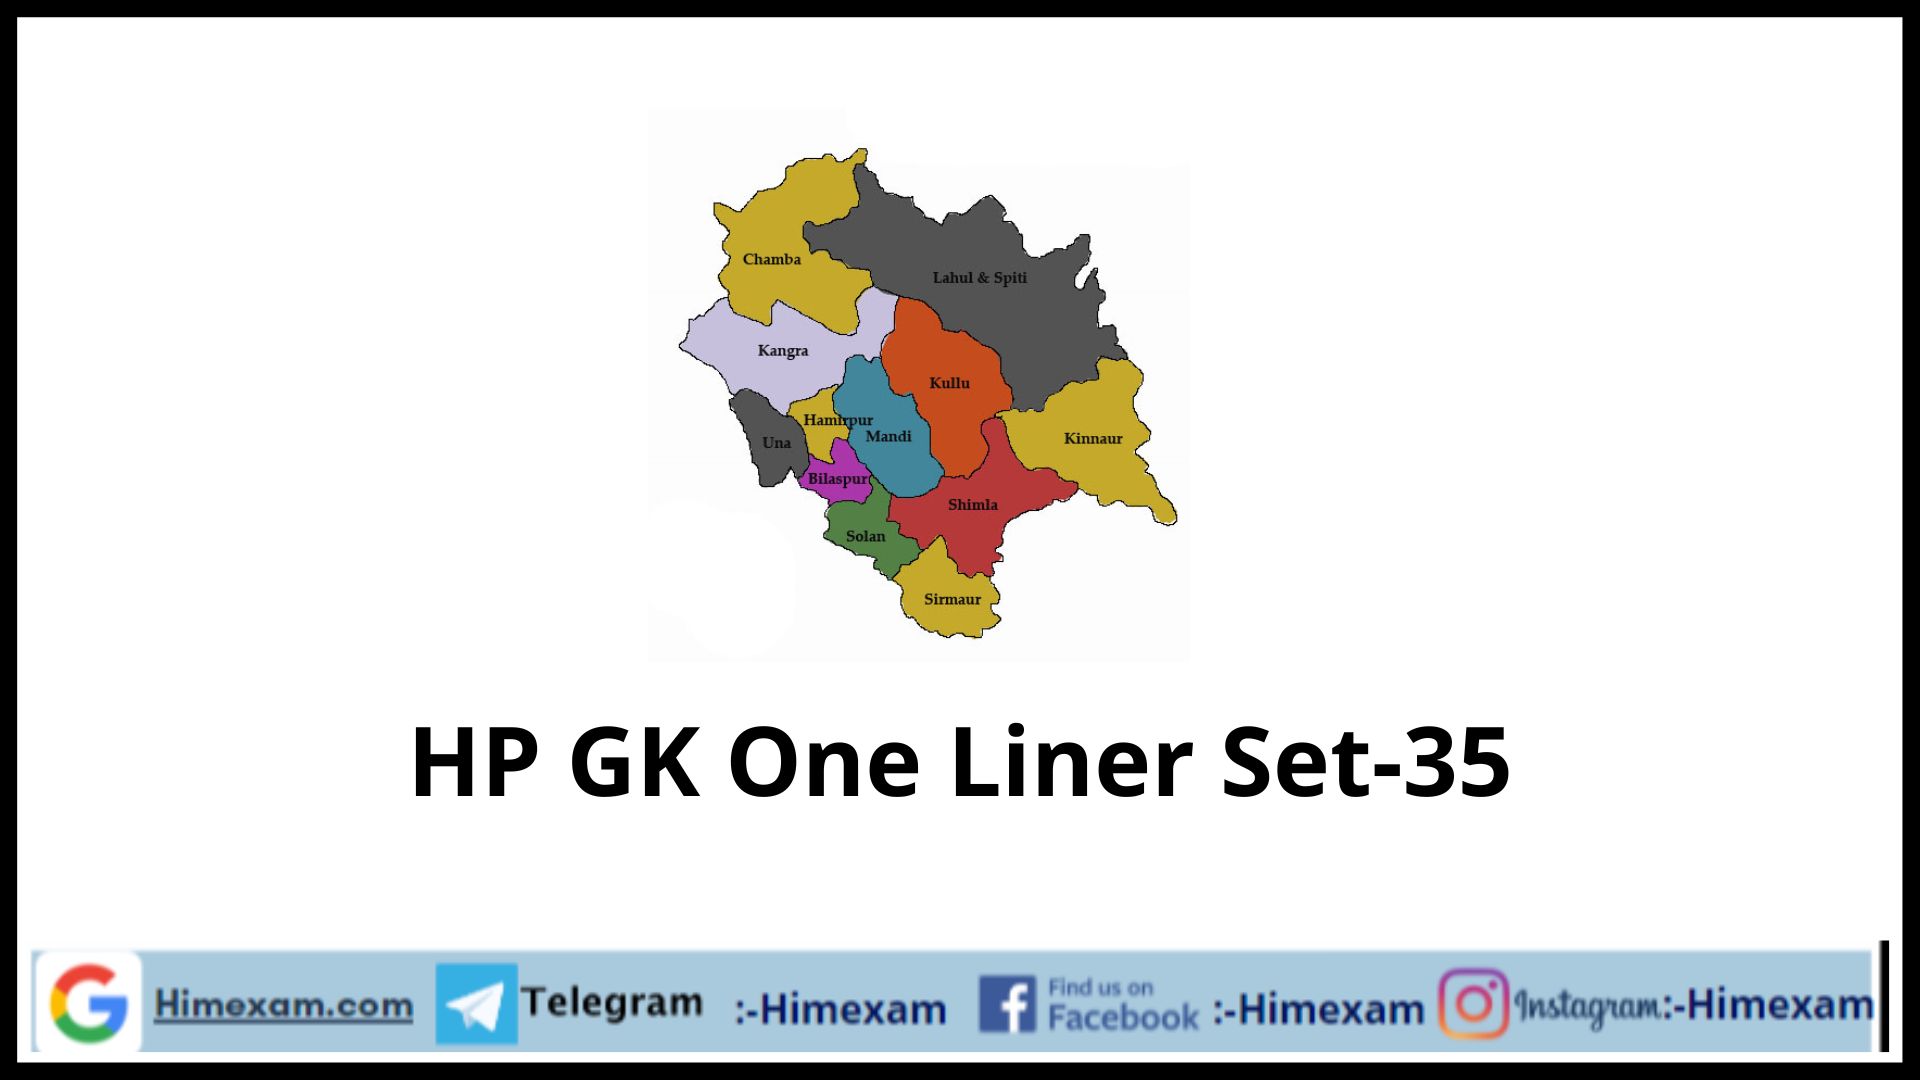 HP GK One Liner Set-35